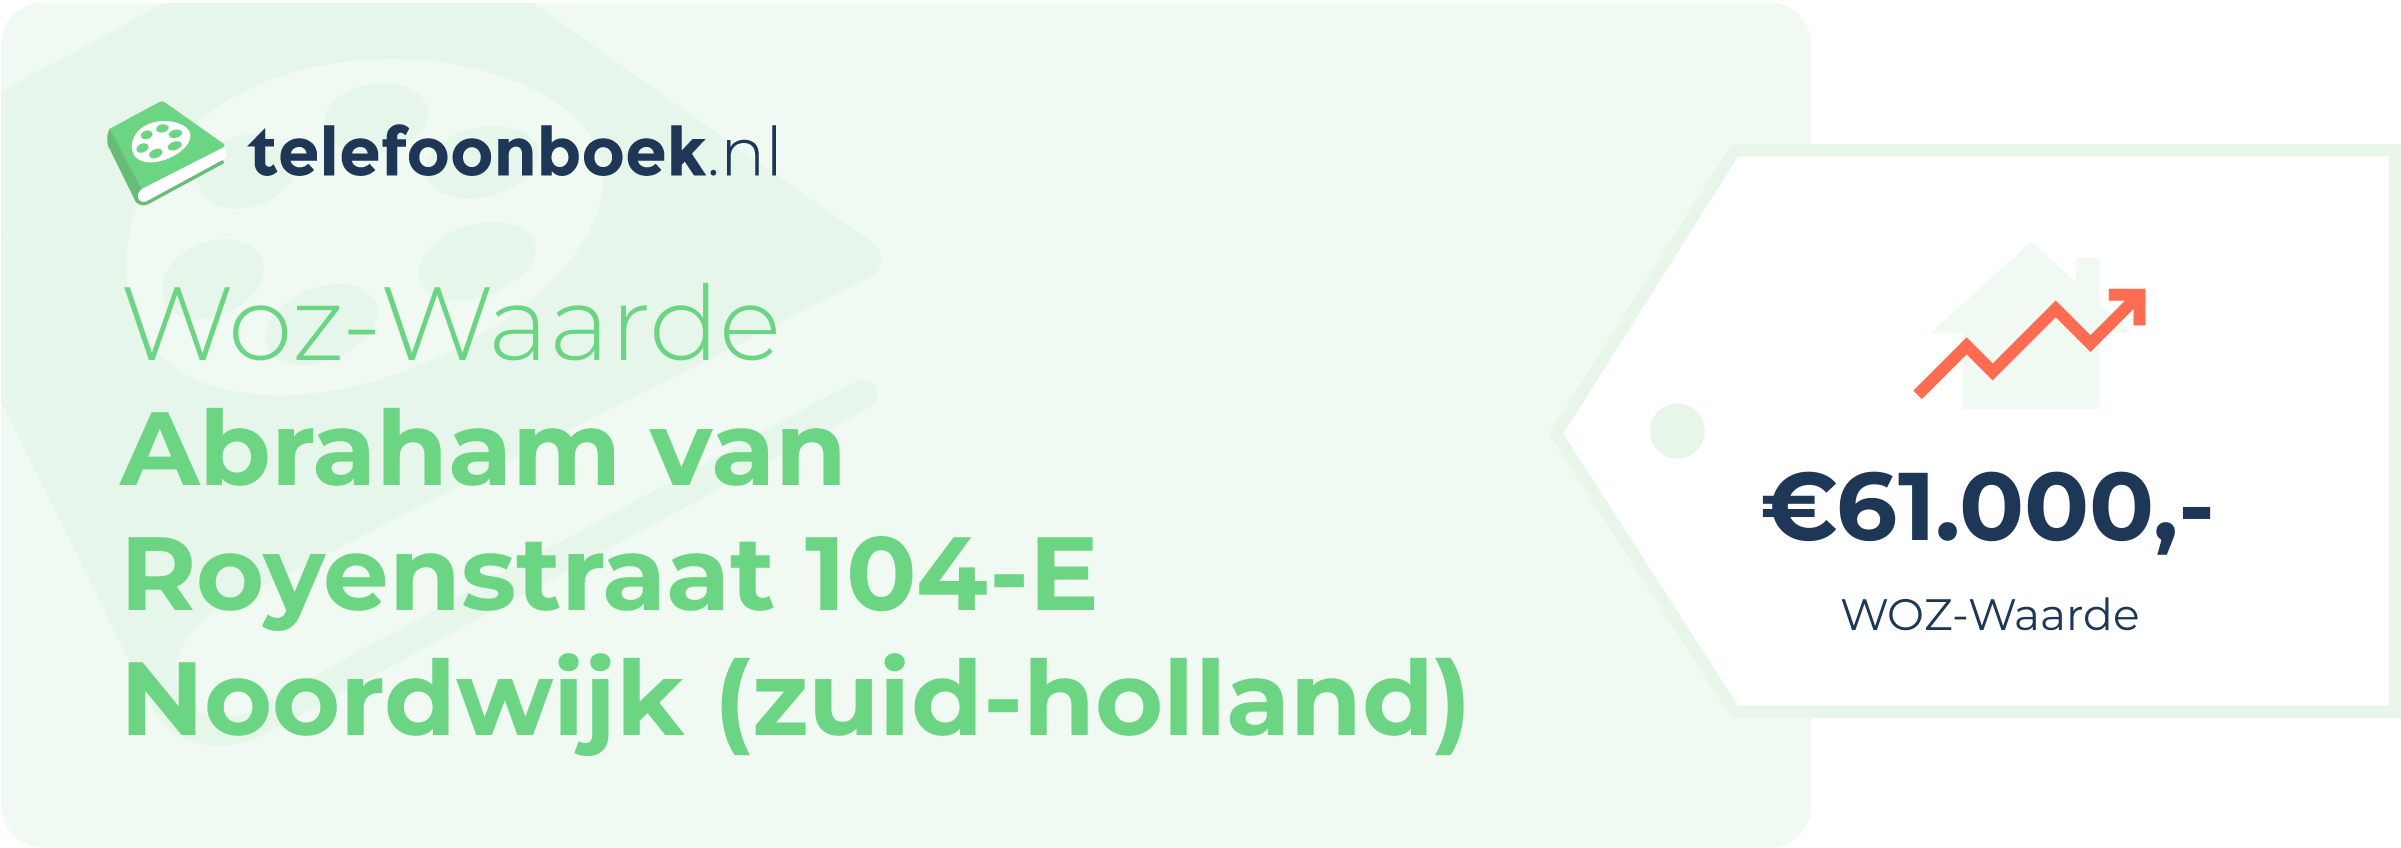 WOZ-waarde Abraham Van Royenstraat 104-E Noordwijk (Zuid-Holland)